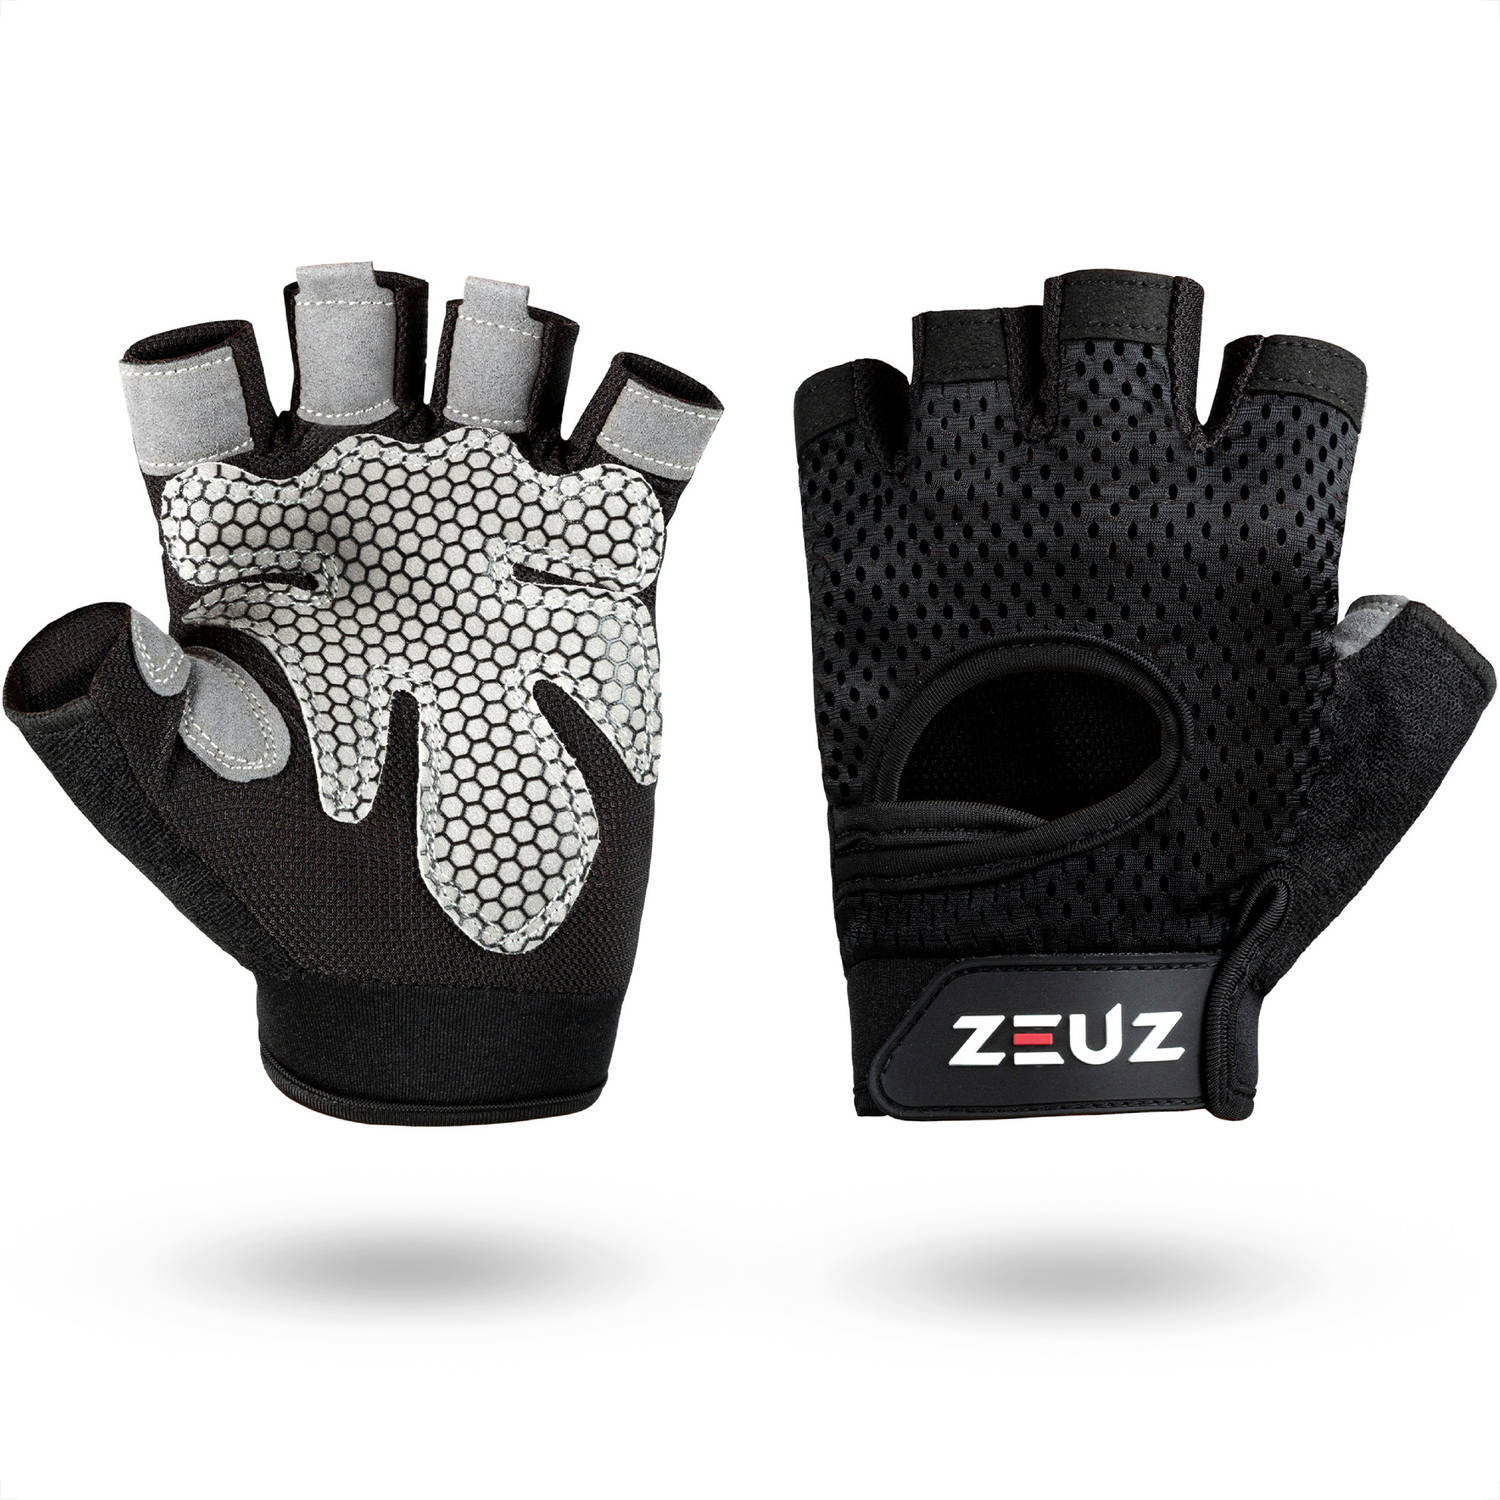 ZEUZ ZEUZ® Sport & Fitness Handschoenen Dames & Heren – Krachttraining Artikelen – Gym & Crossfit Training – Grijs & Zwart – Gloves voor meer grip en bescherming tegen blaren & eelt - Maat XL